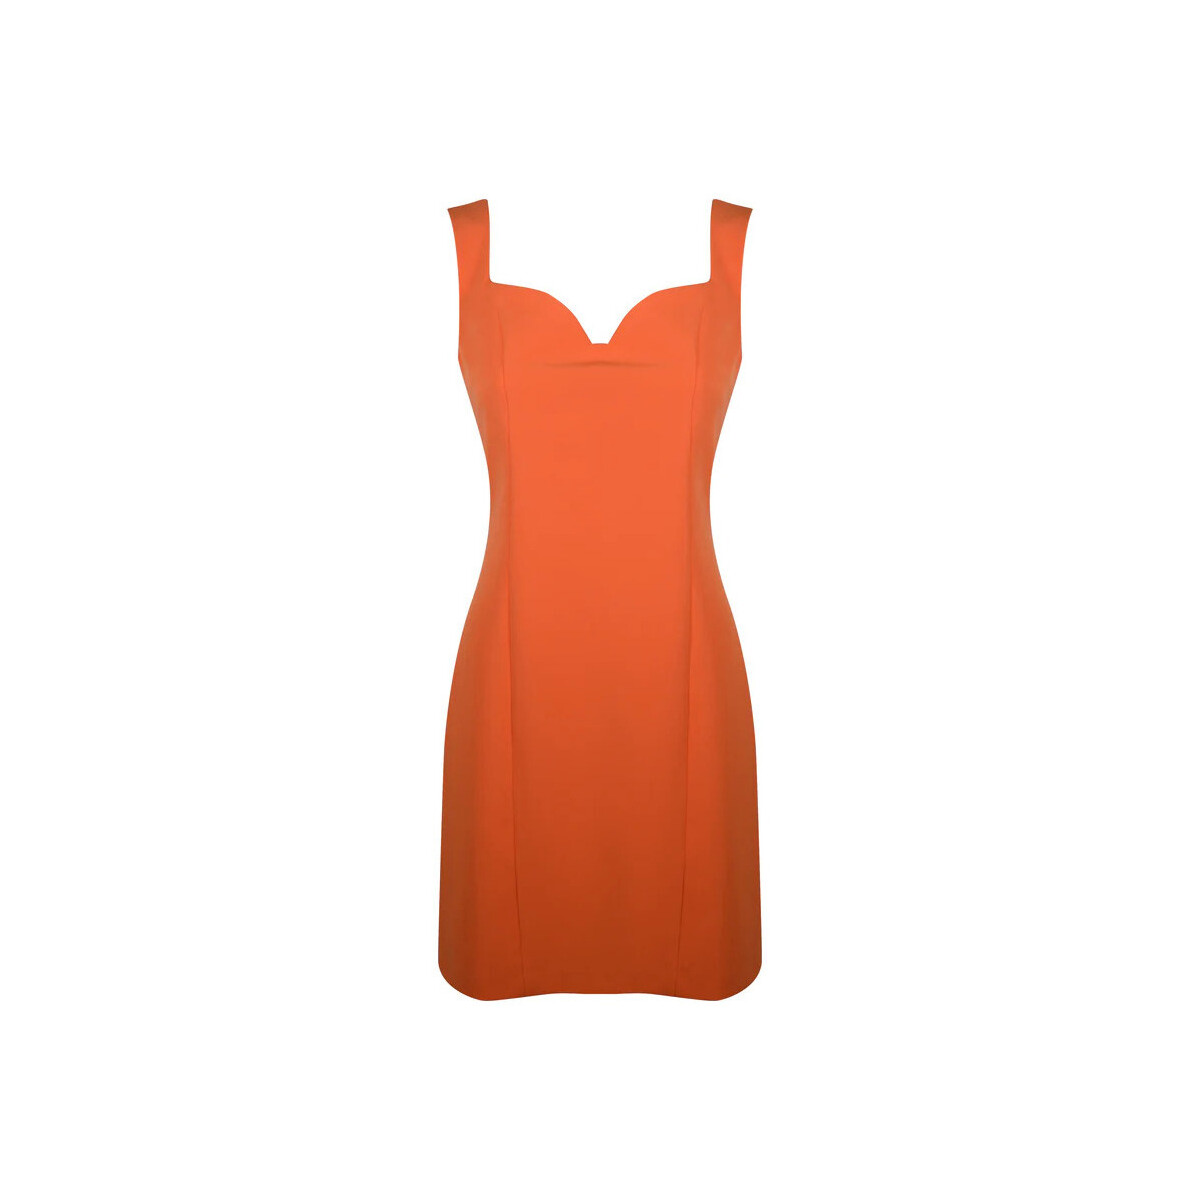 textil Mujer Vestidos Sarah Chole 014574A Naranja